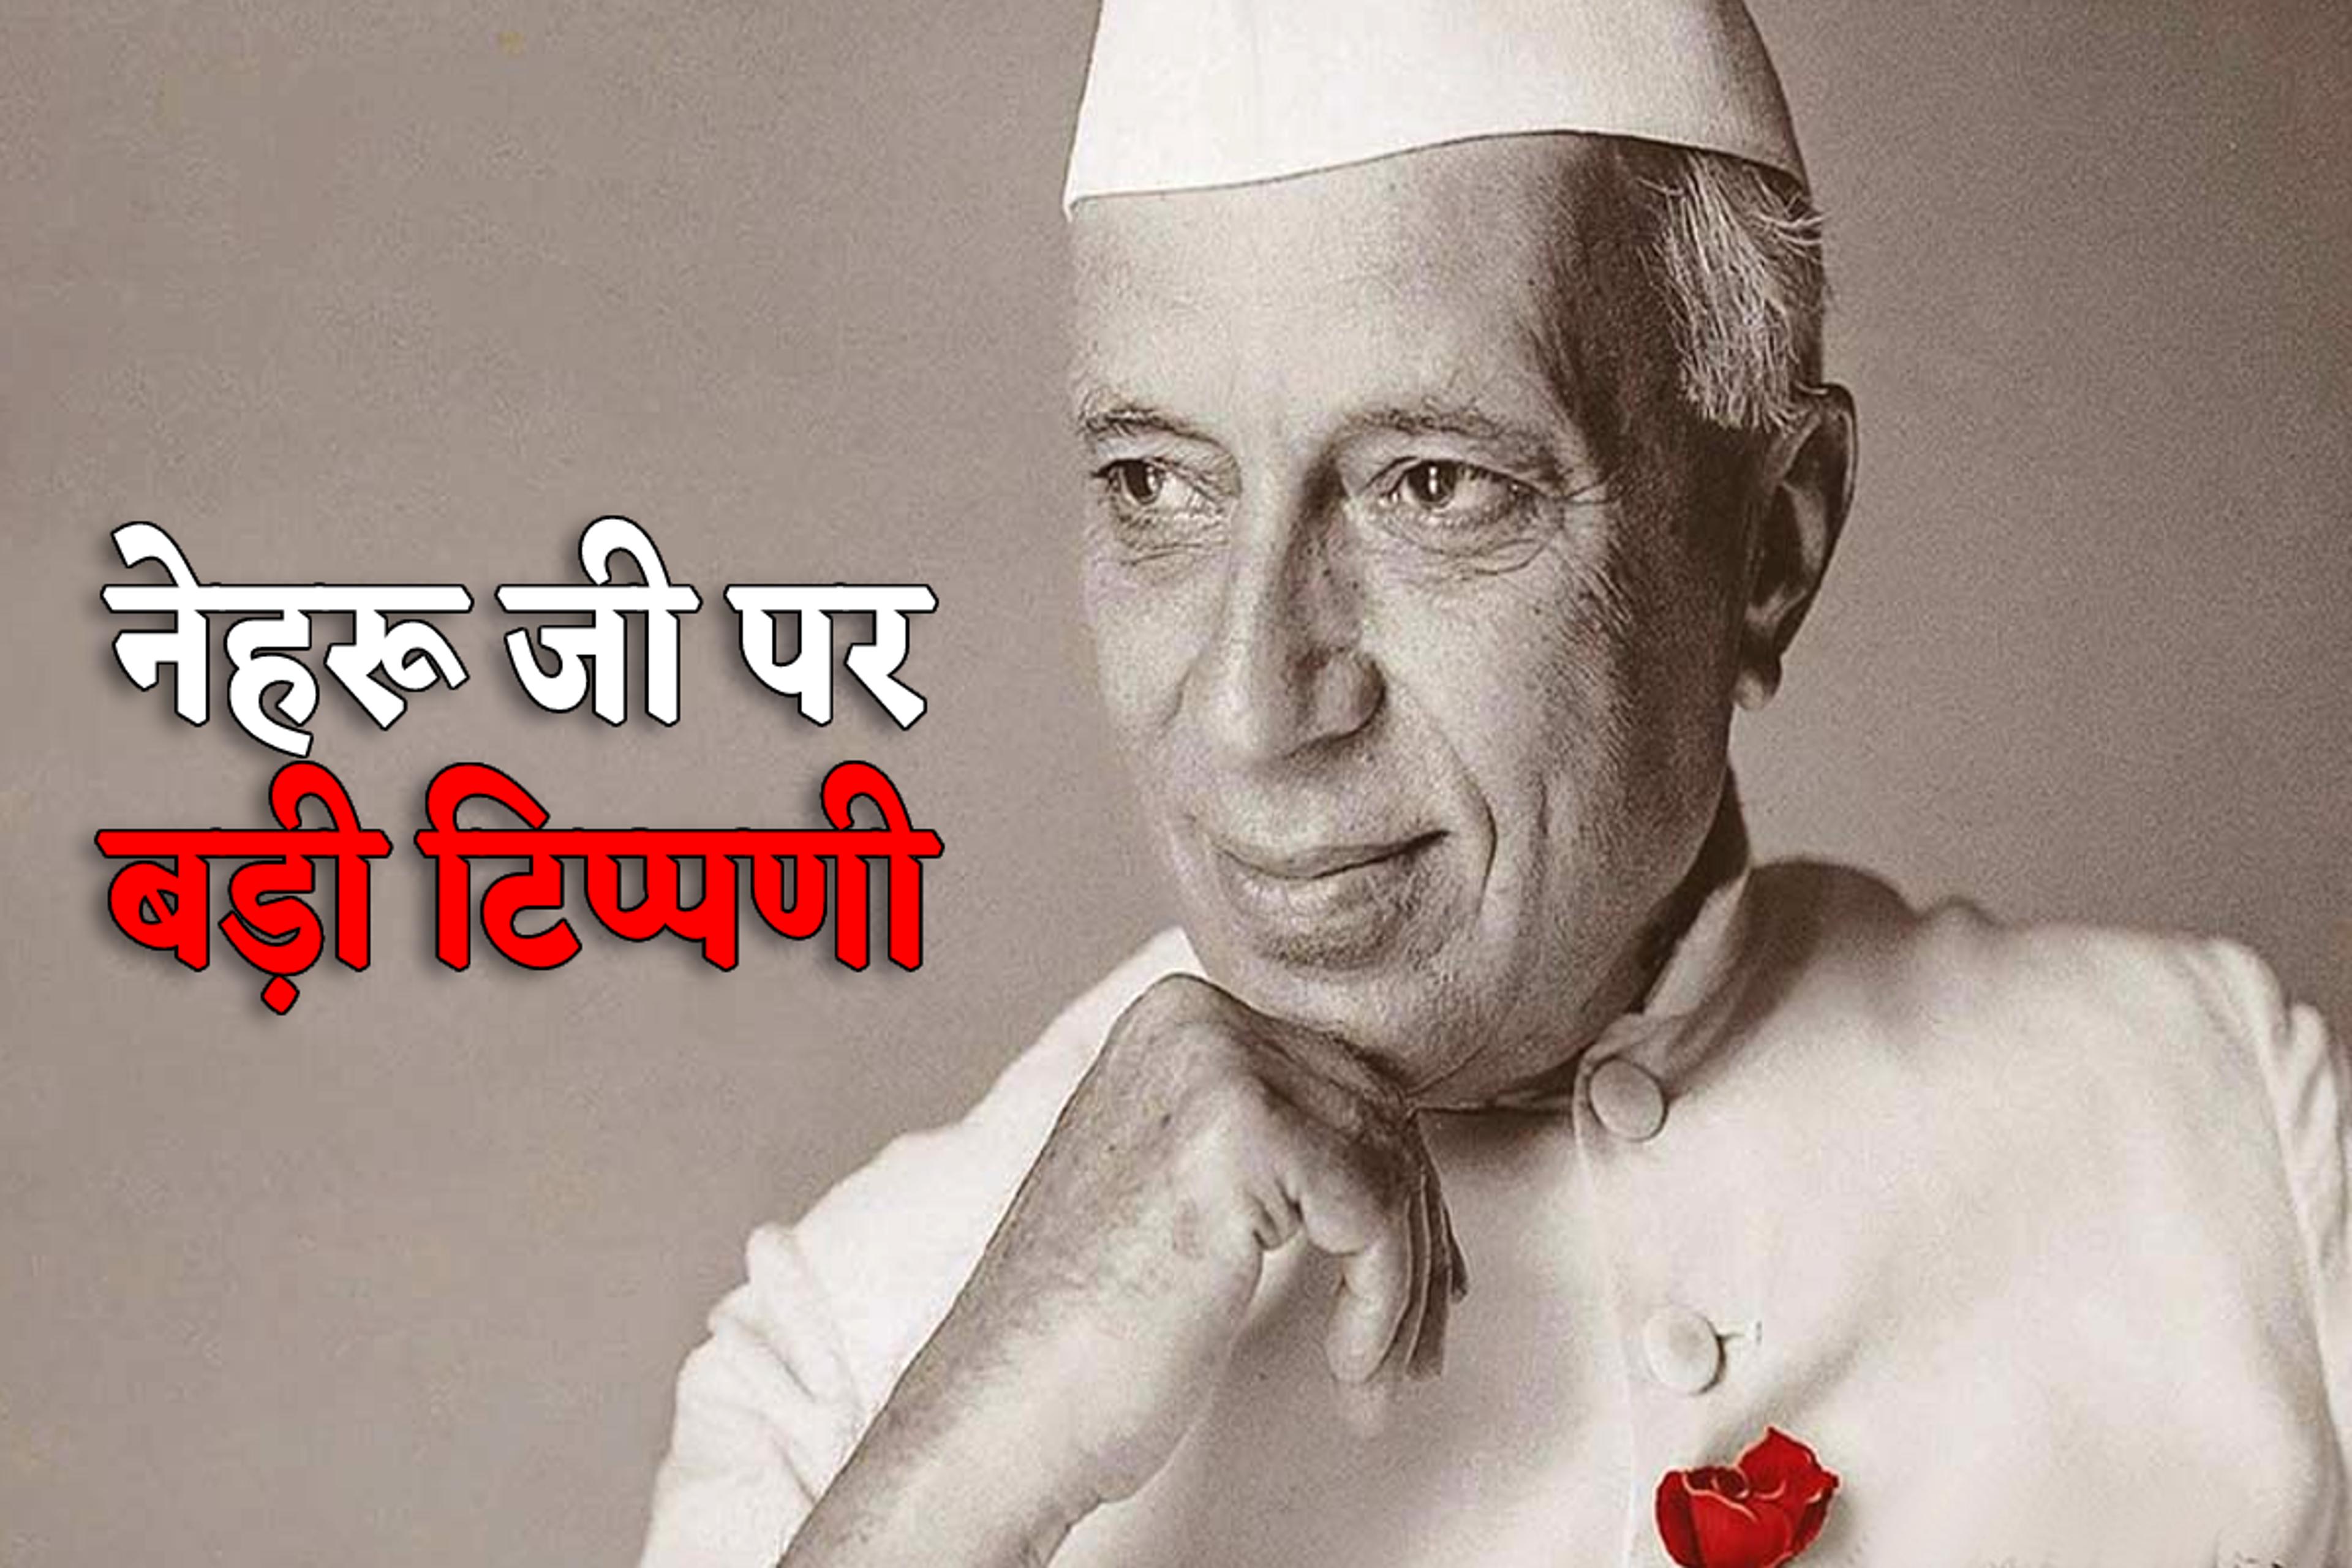 Big Attack on Jawaharlal Nehru : ‘नेहरू जी के कपड़े धोने बाहर से लाया जाता था
पानी’, दिग्गज नेता का बड़ा दावा